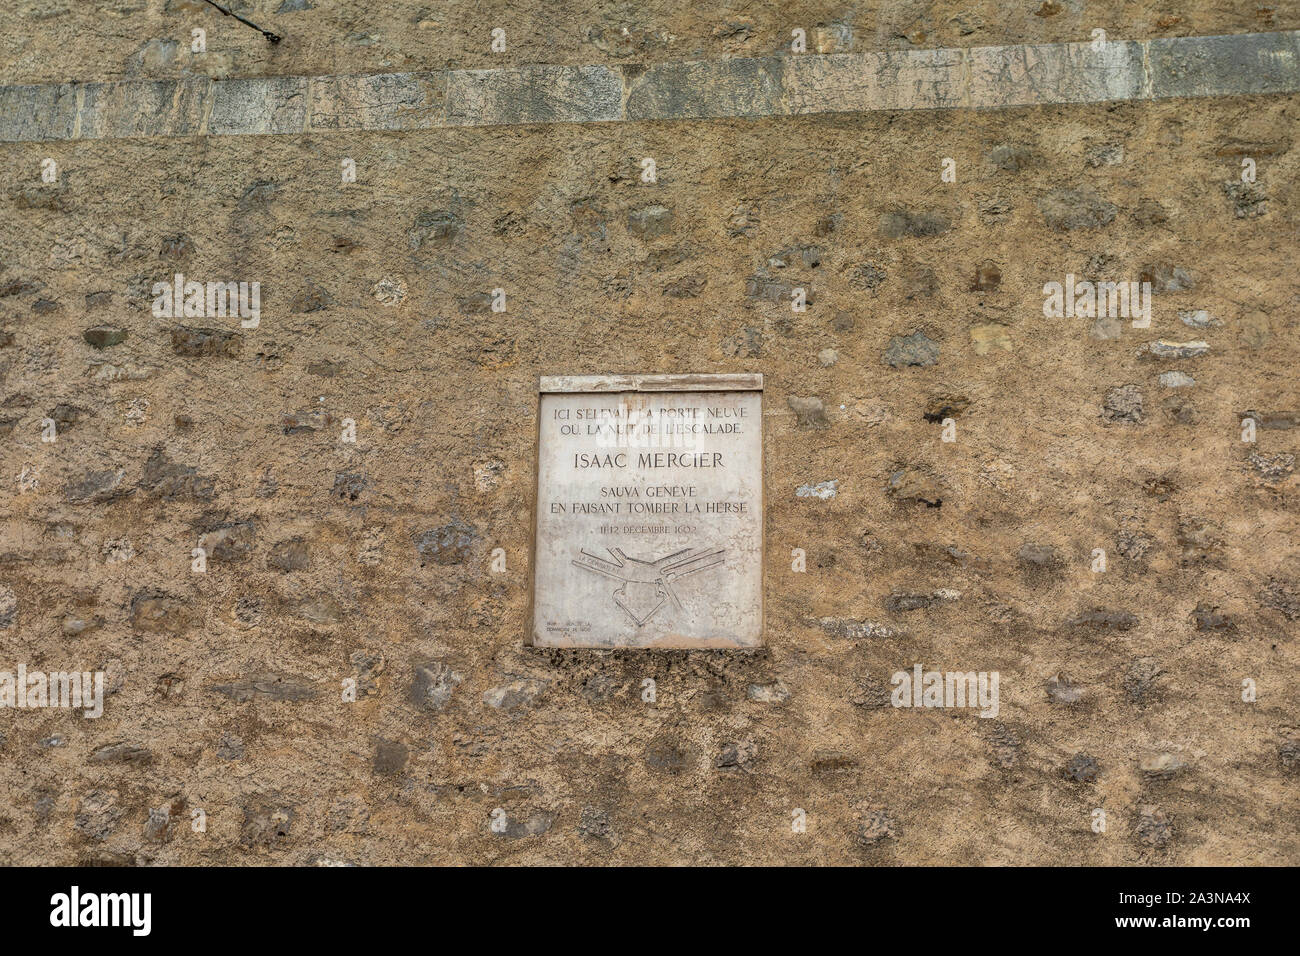 Commemorative plaque located at Rampe de la Treille Genève, Switzerland recalling the heroic act of Isaac Mercier Stock Photo